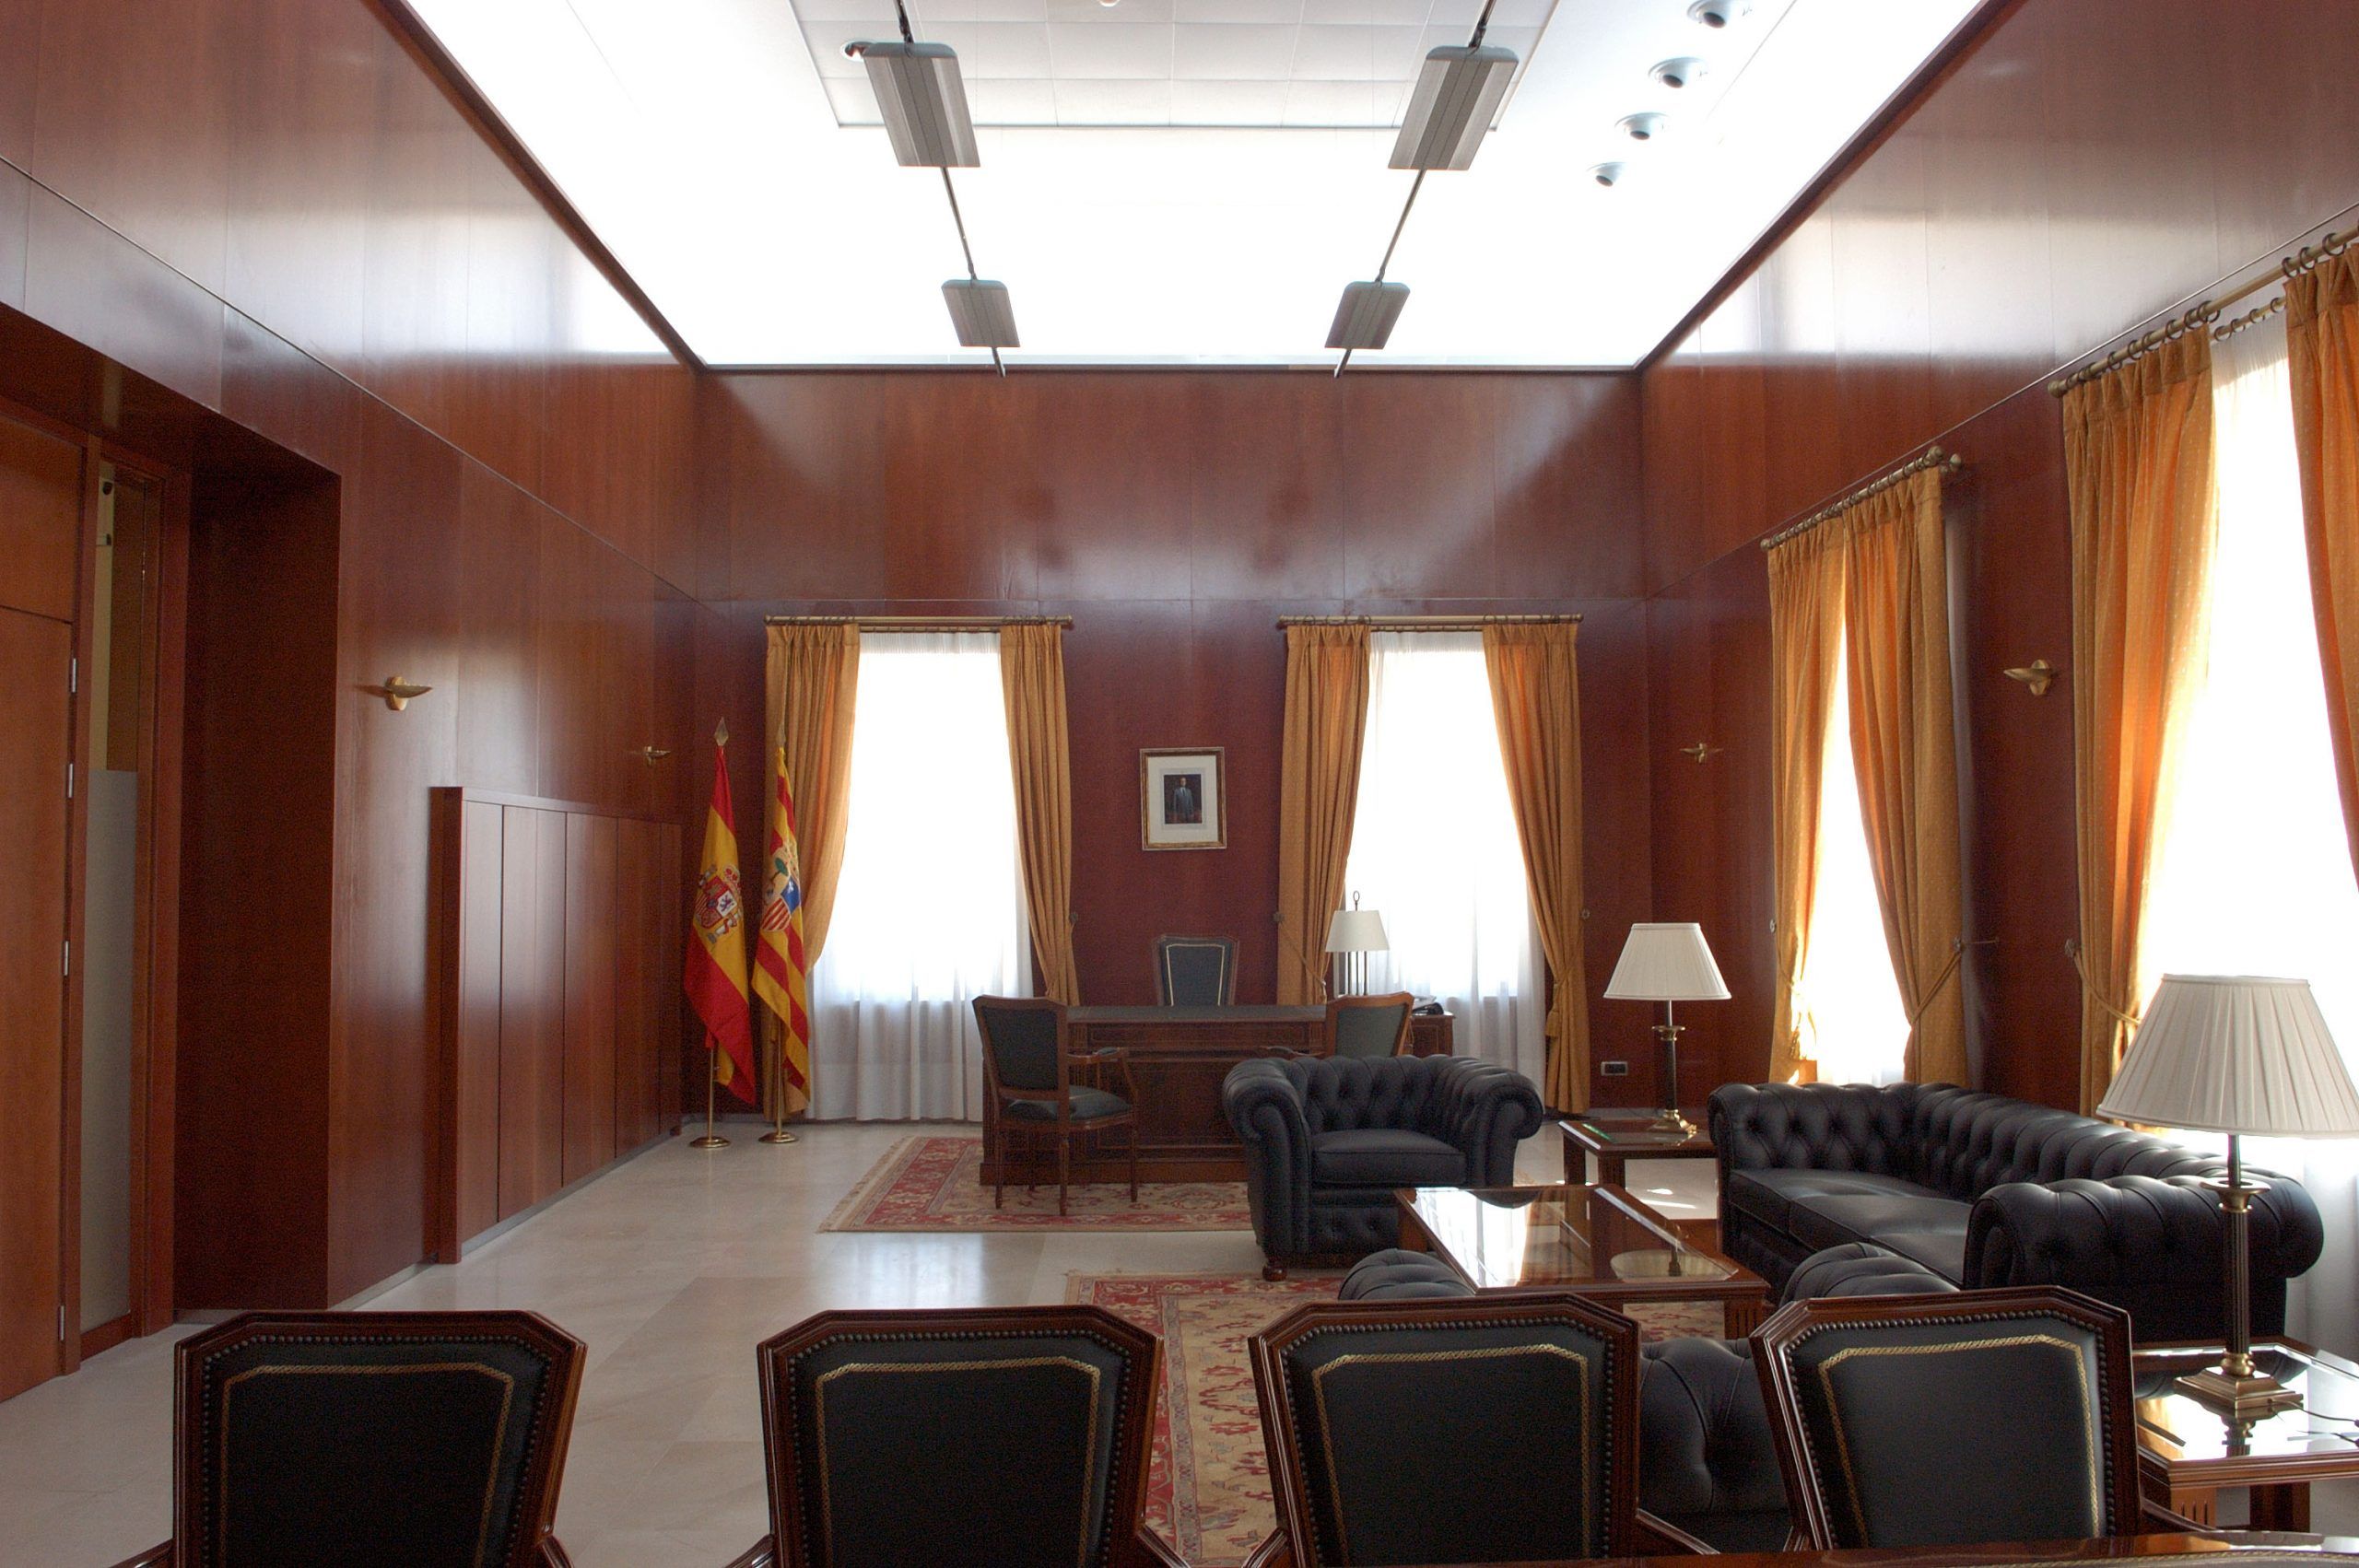 Arquidos - Proyectos de Arquitectura en Teruel - DGA